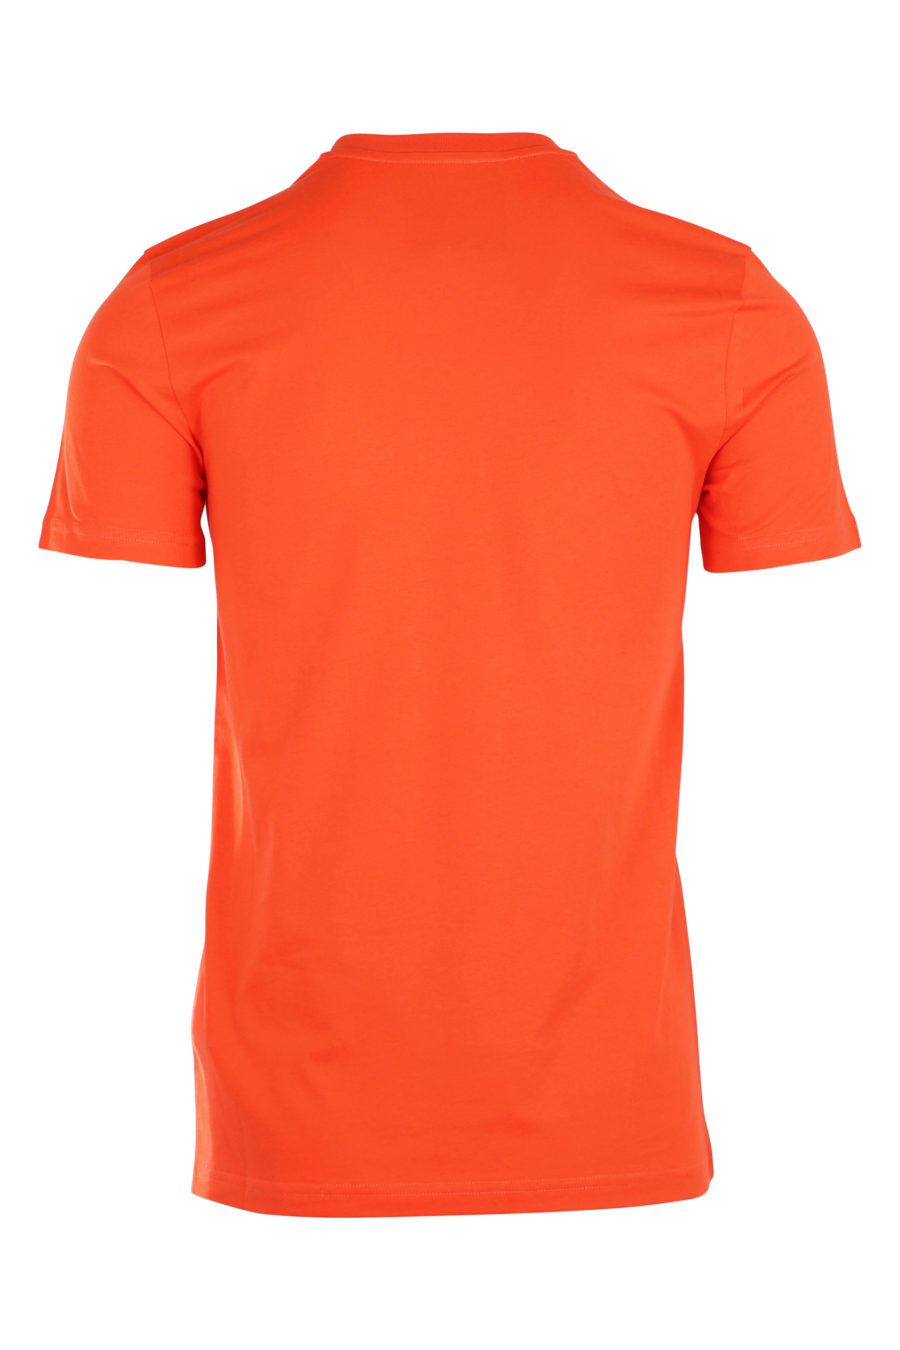 Orange T-shirt with large "fantasy" logo - IMG 9938 1